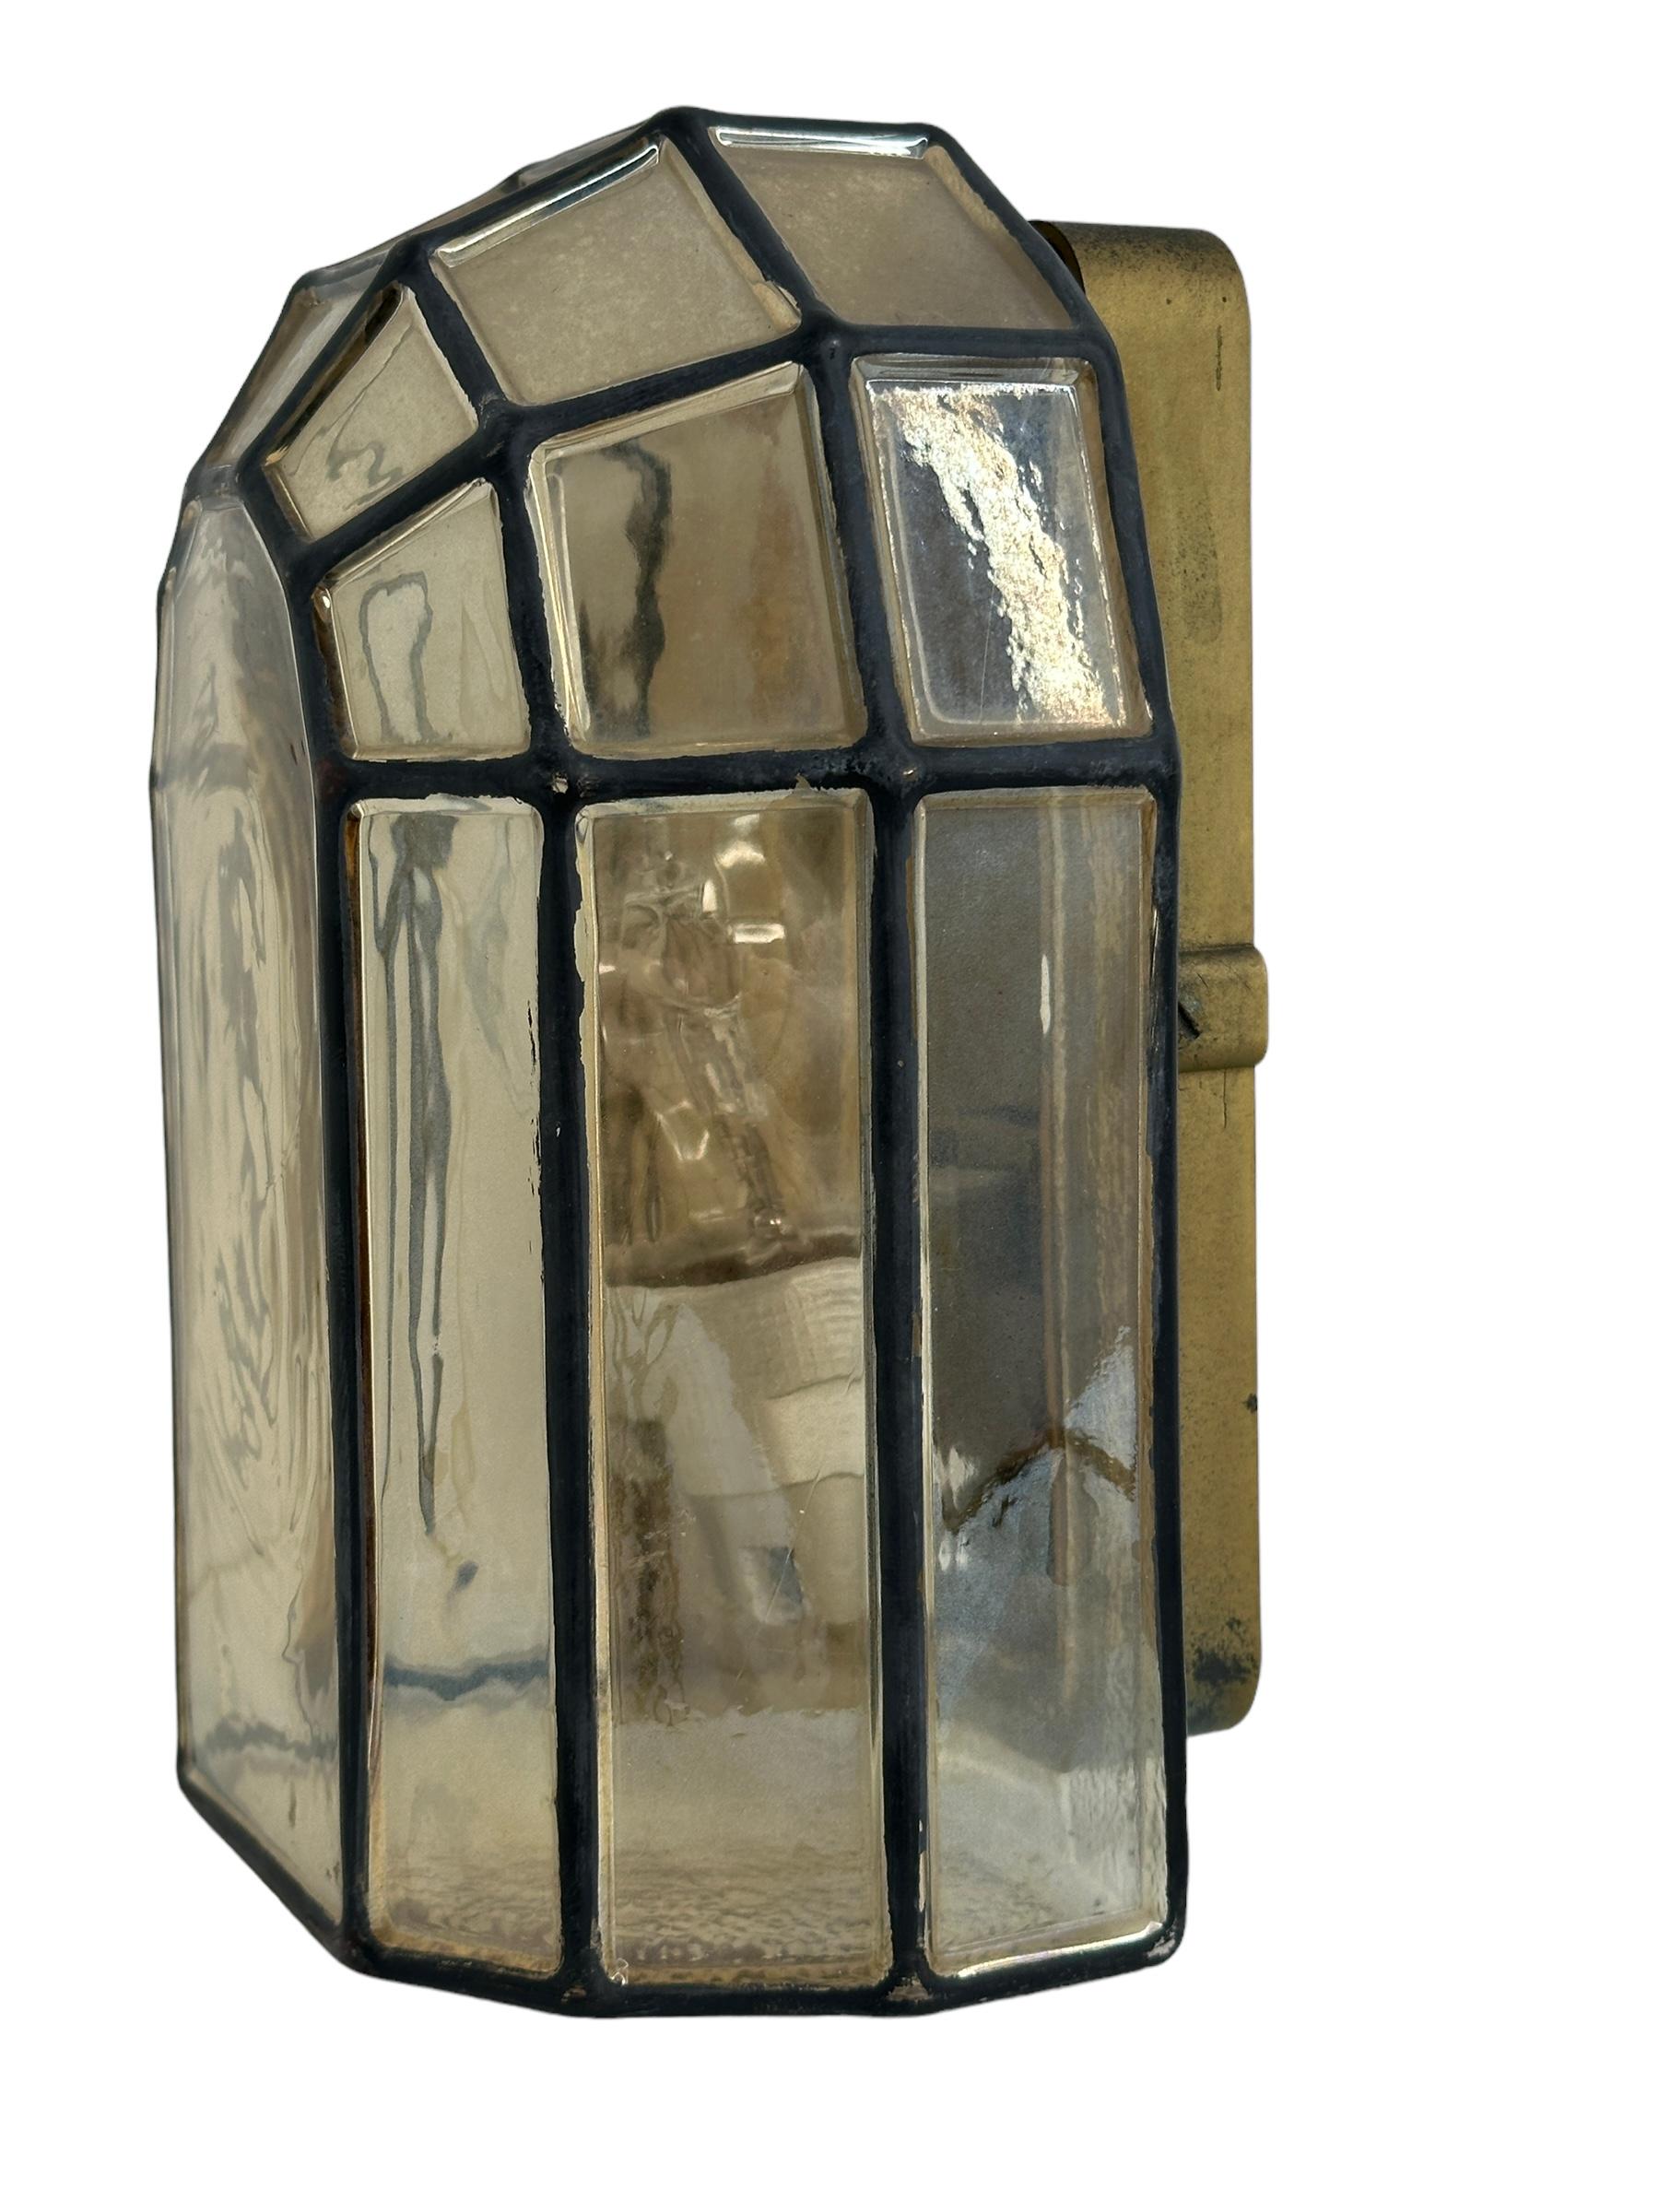 Wunderschöne Bogenleuchte aus Glas mit attraktiven Eisendetails, minimalistische und einfach geformte Wandleuchte oder Wandleuchter, die der Glashütte Limburg, Deutschland, zugeschrieben wird, hergestellt in den 1970er Jahren. Diese Vintage-Leuchte